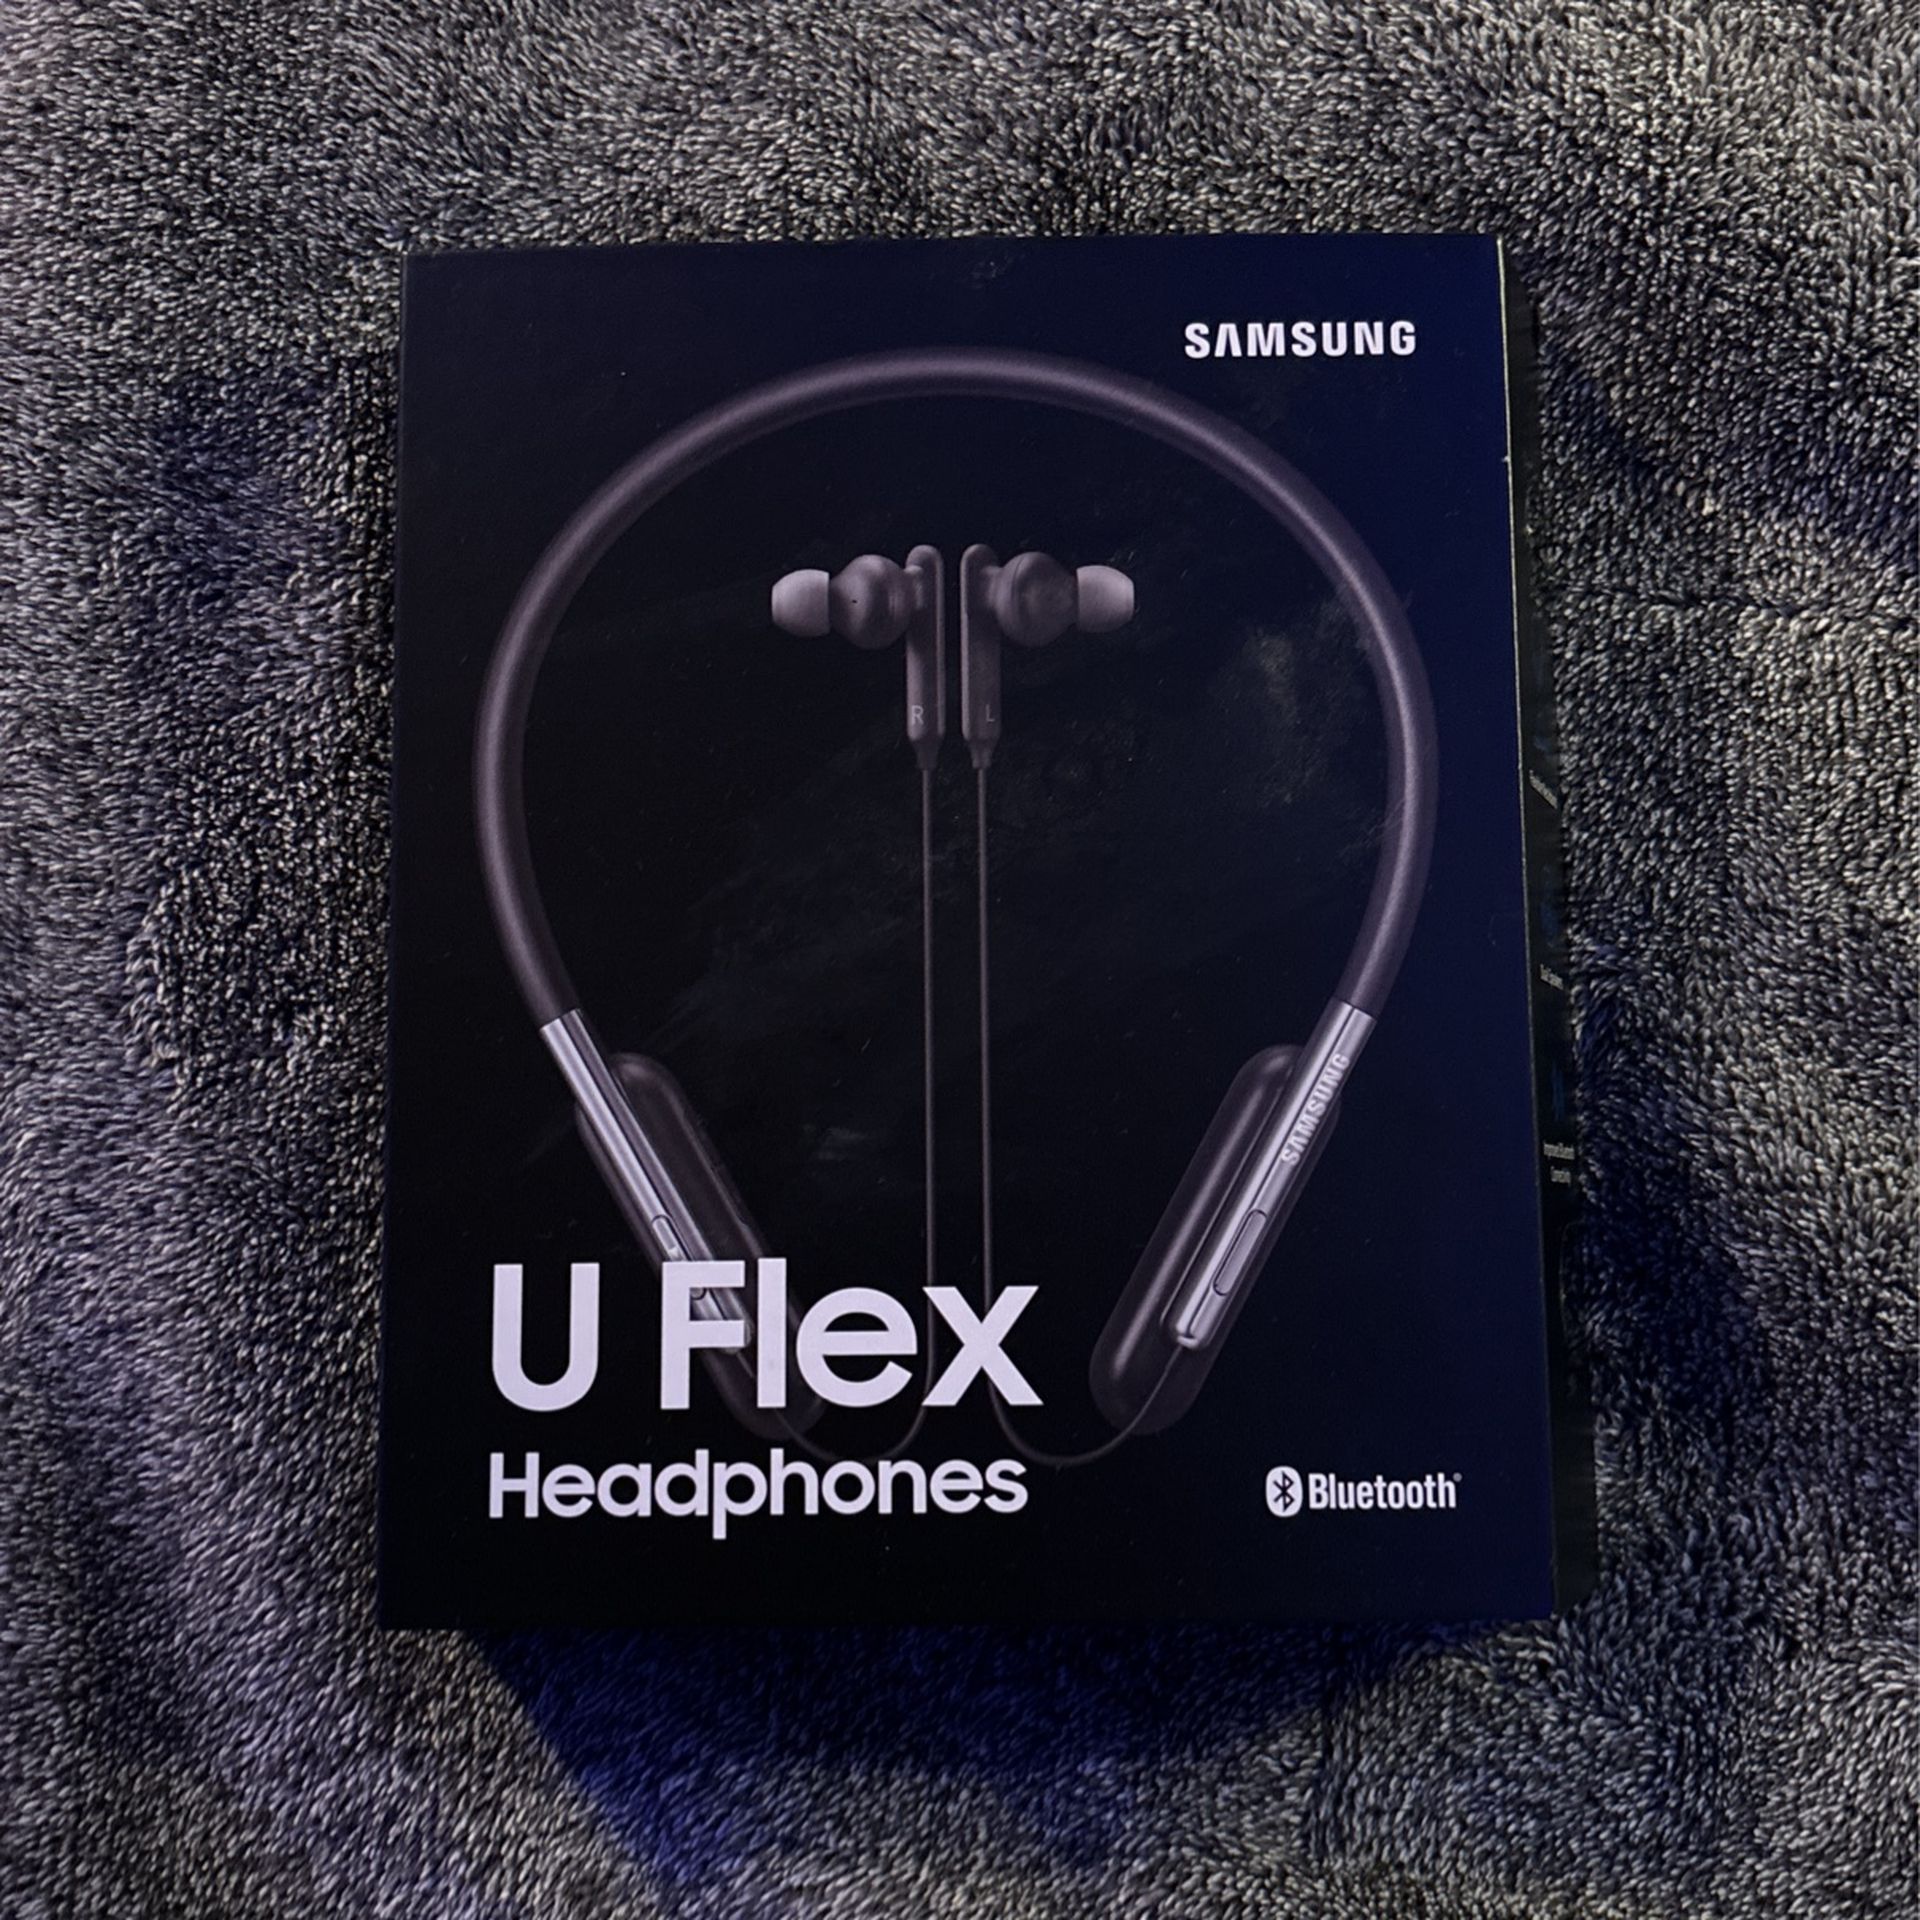 Samsung U Flex Headphones (Black)